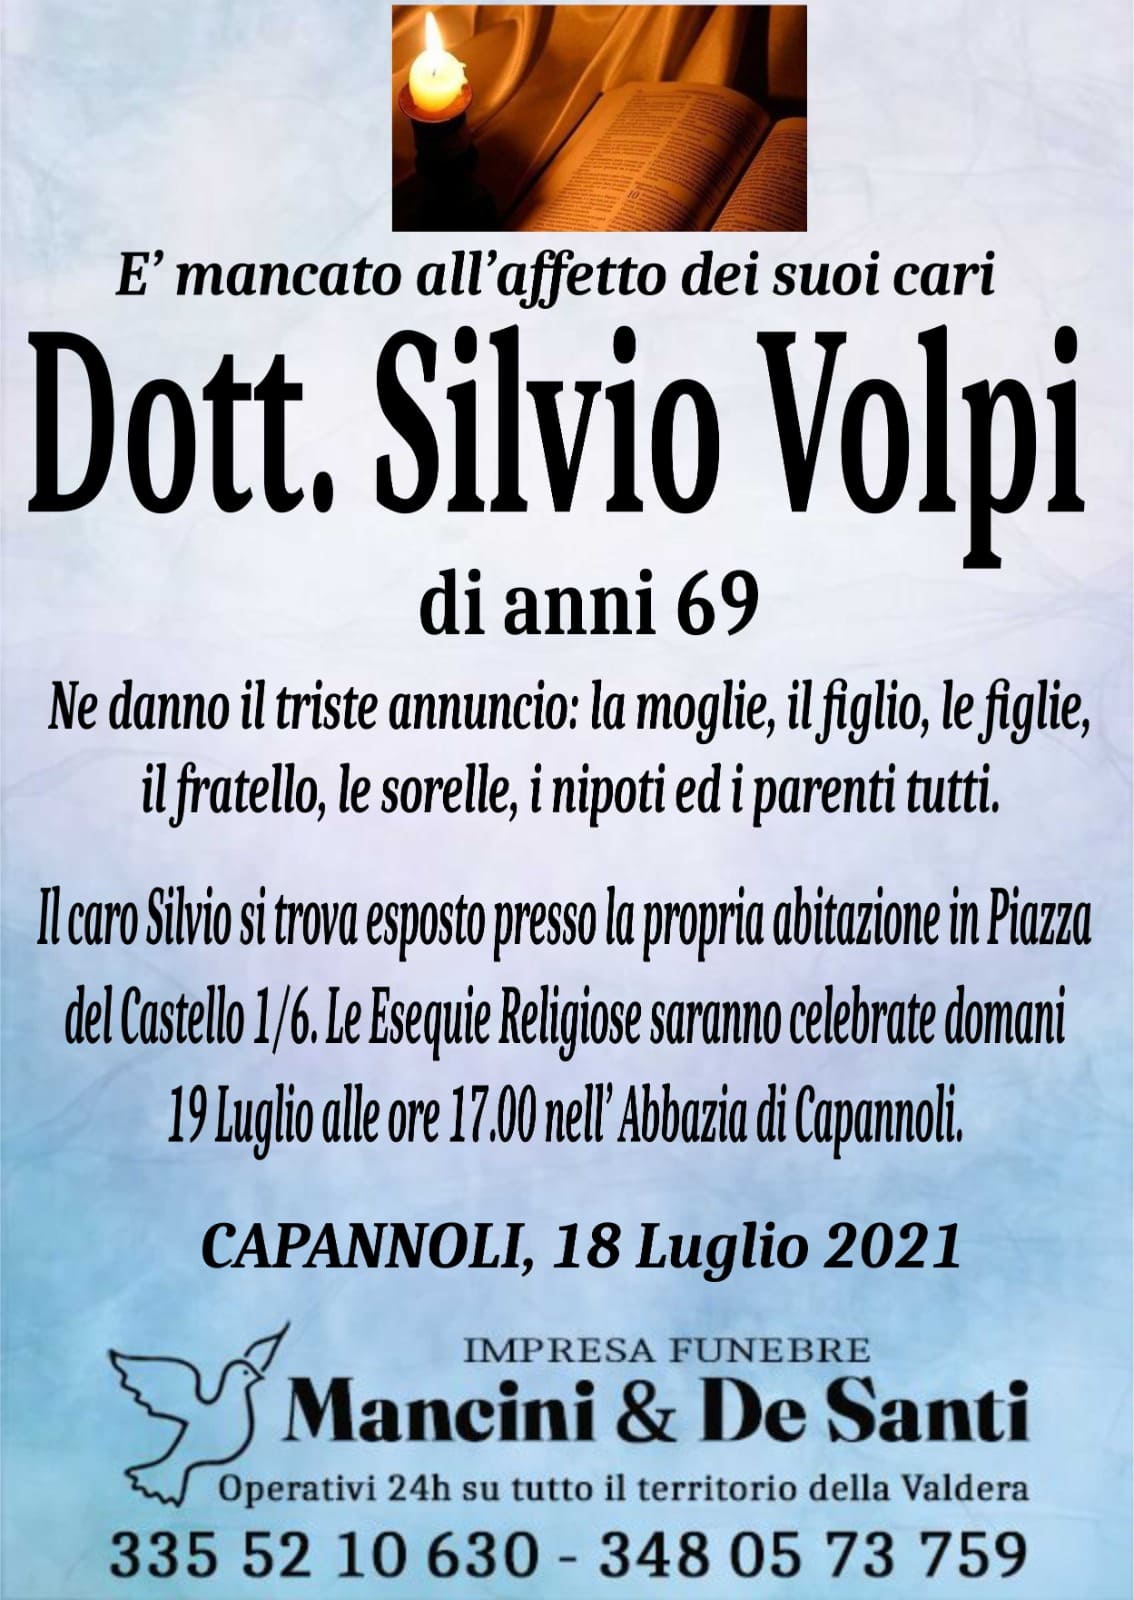 Necrologio dott. Silvio Volpi - Funerale a Capannoli - 19 luglio ore 17.00 - Abbazia di Capannoli